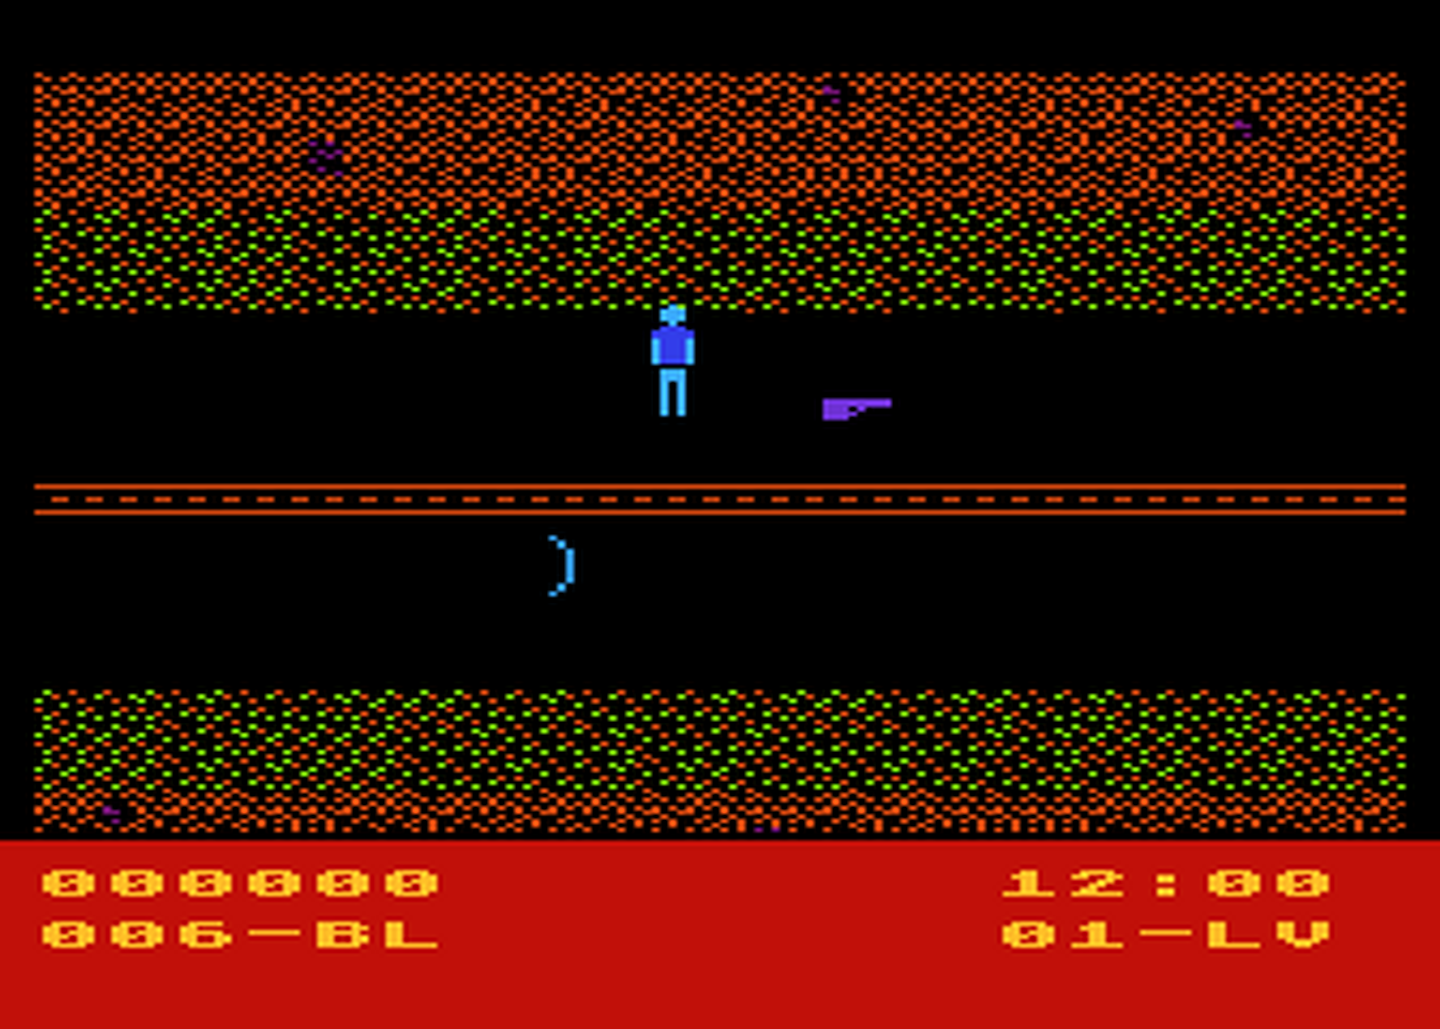 Atari GameBase Maxwell_Manor_-_Skull_of_Doom Avalon_Hill 1984